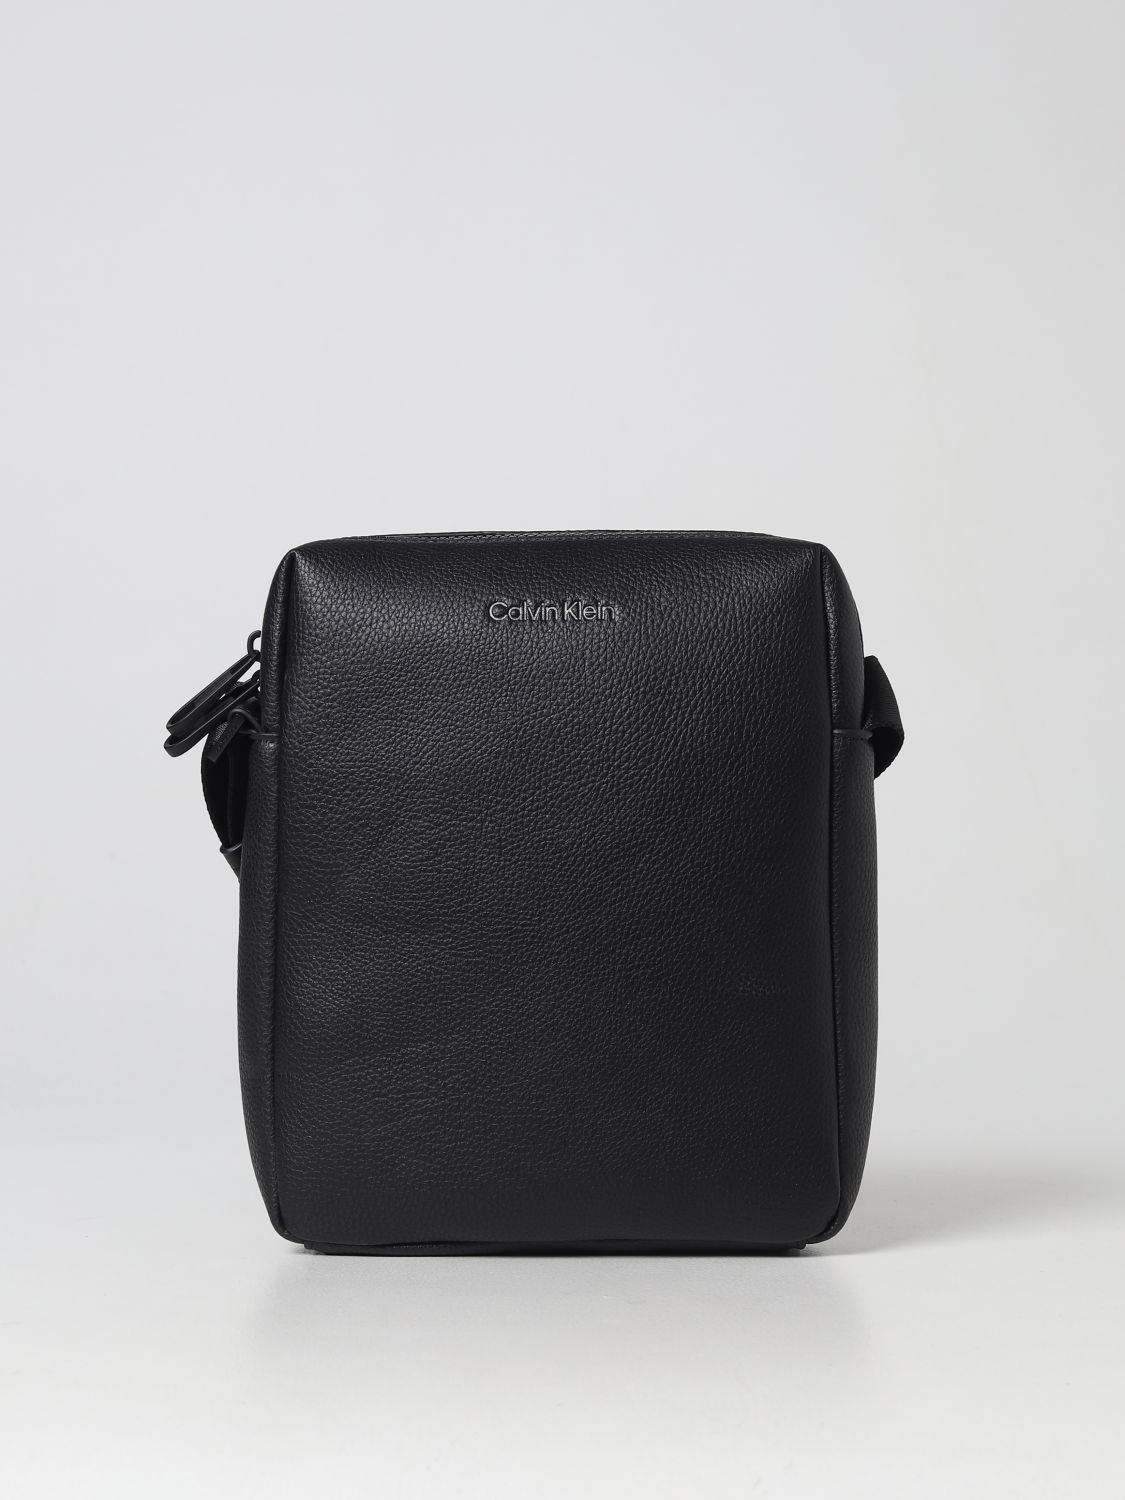 Calvin Klein Bags